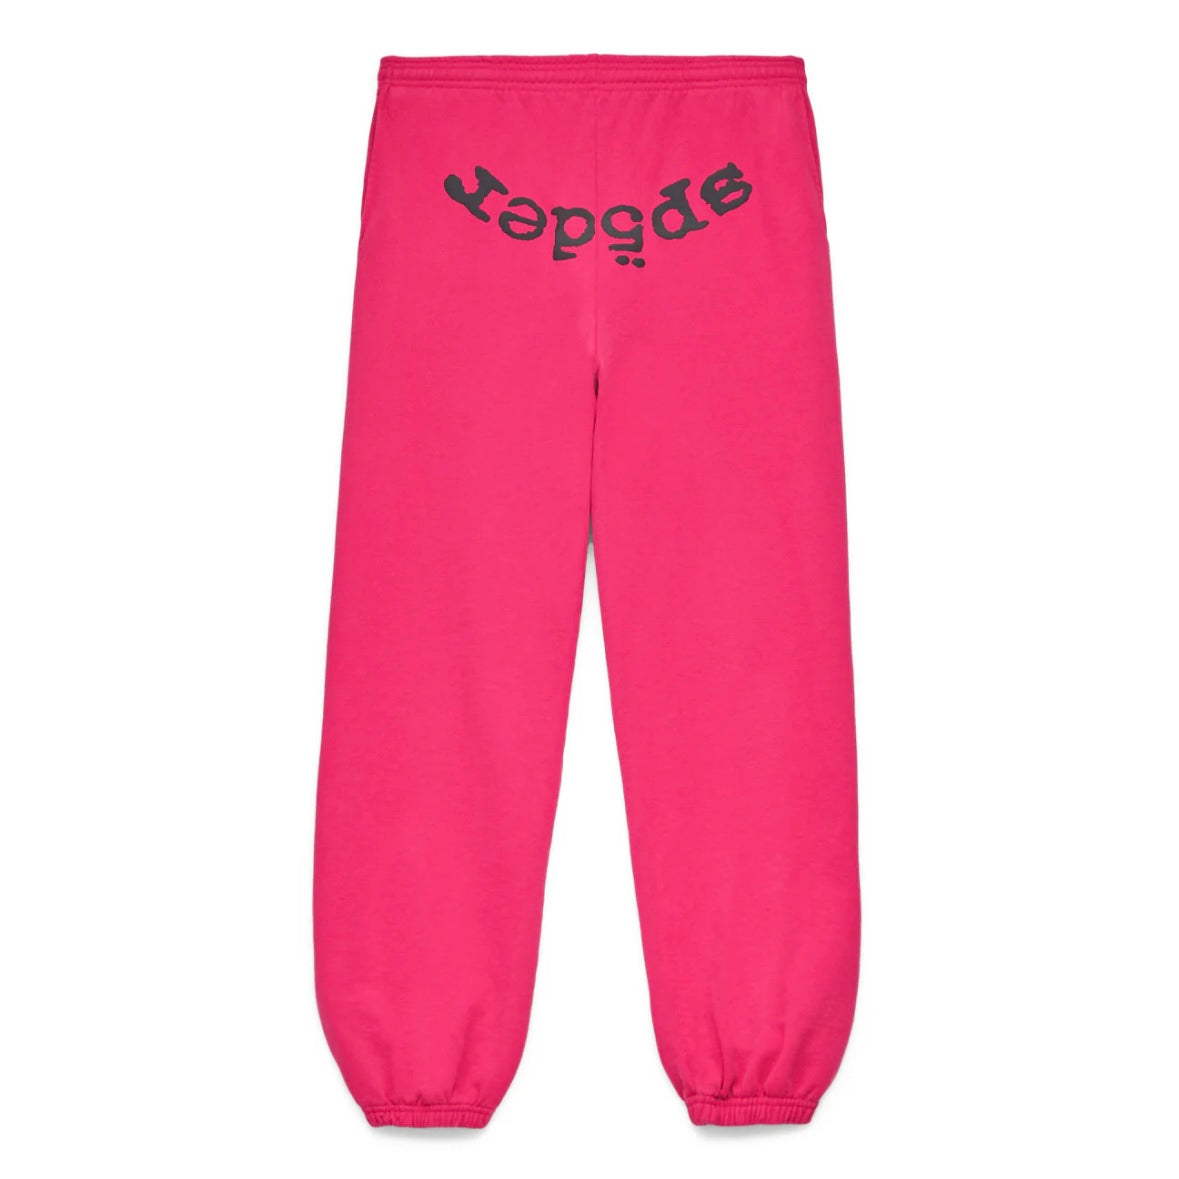 Sp5der Pink Black Legacy Sweatpants Front